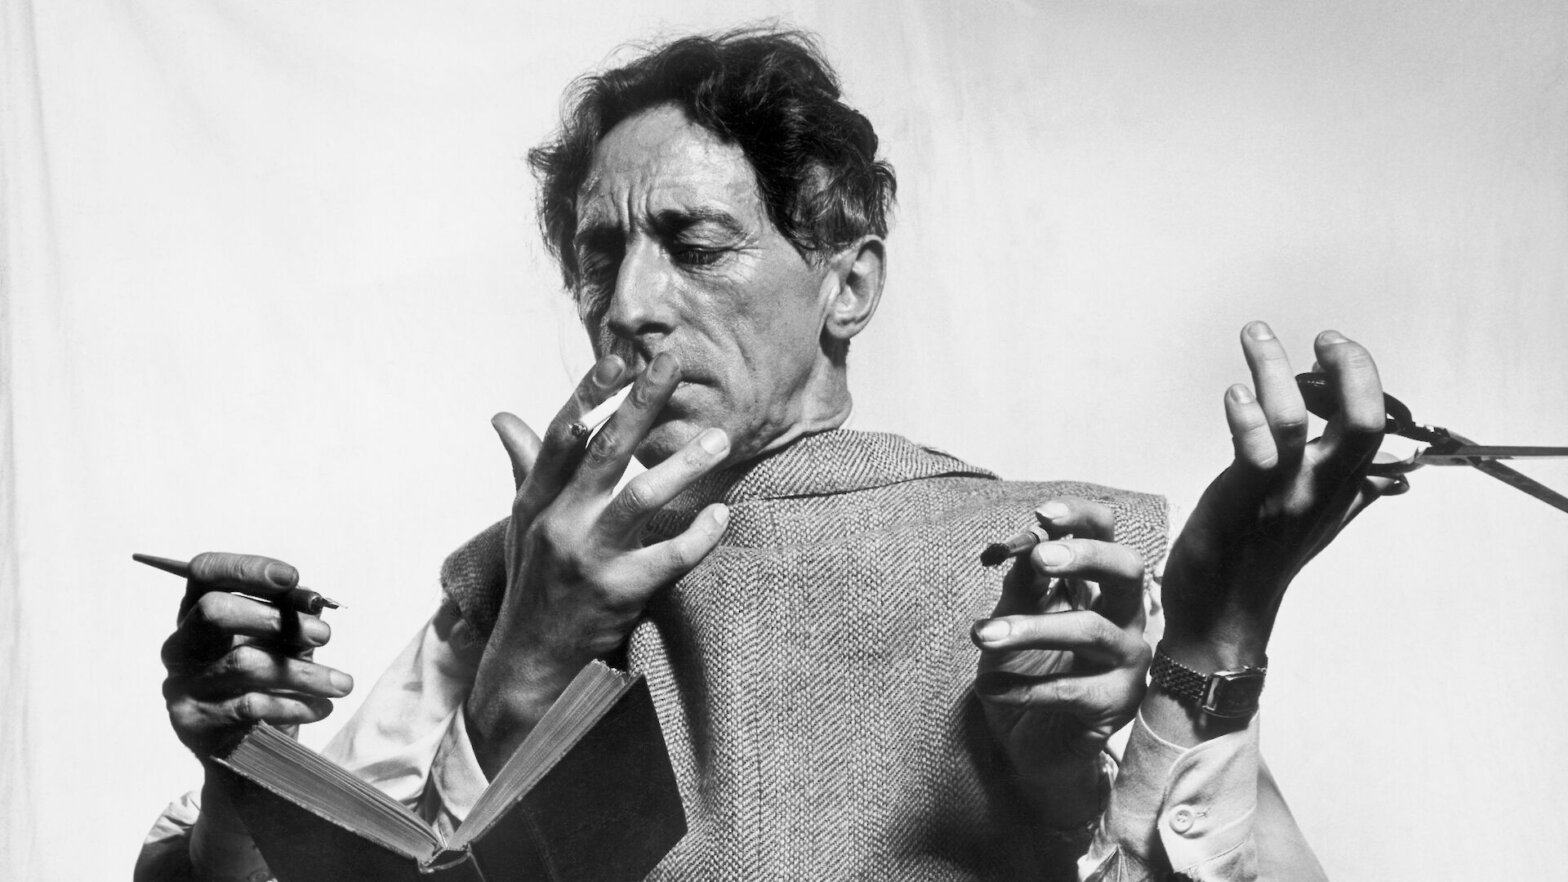 Le poète, artiste et cinéaste français Jean Cocteau